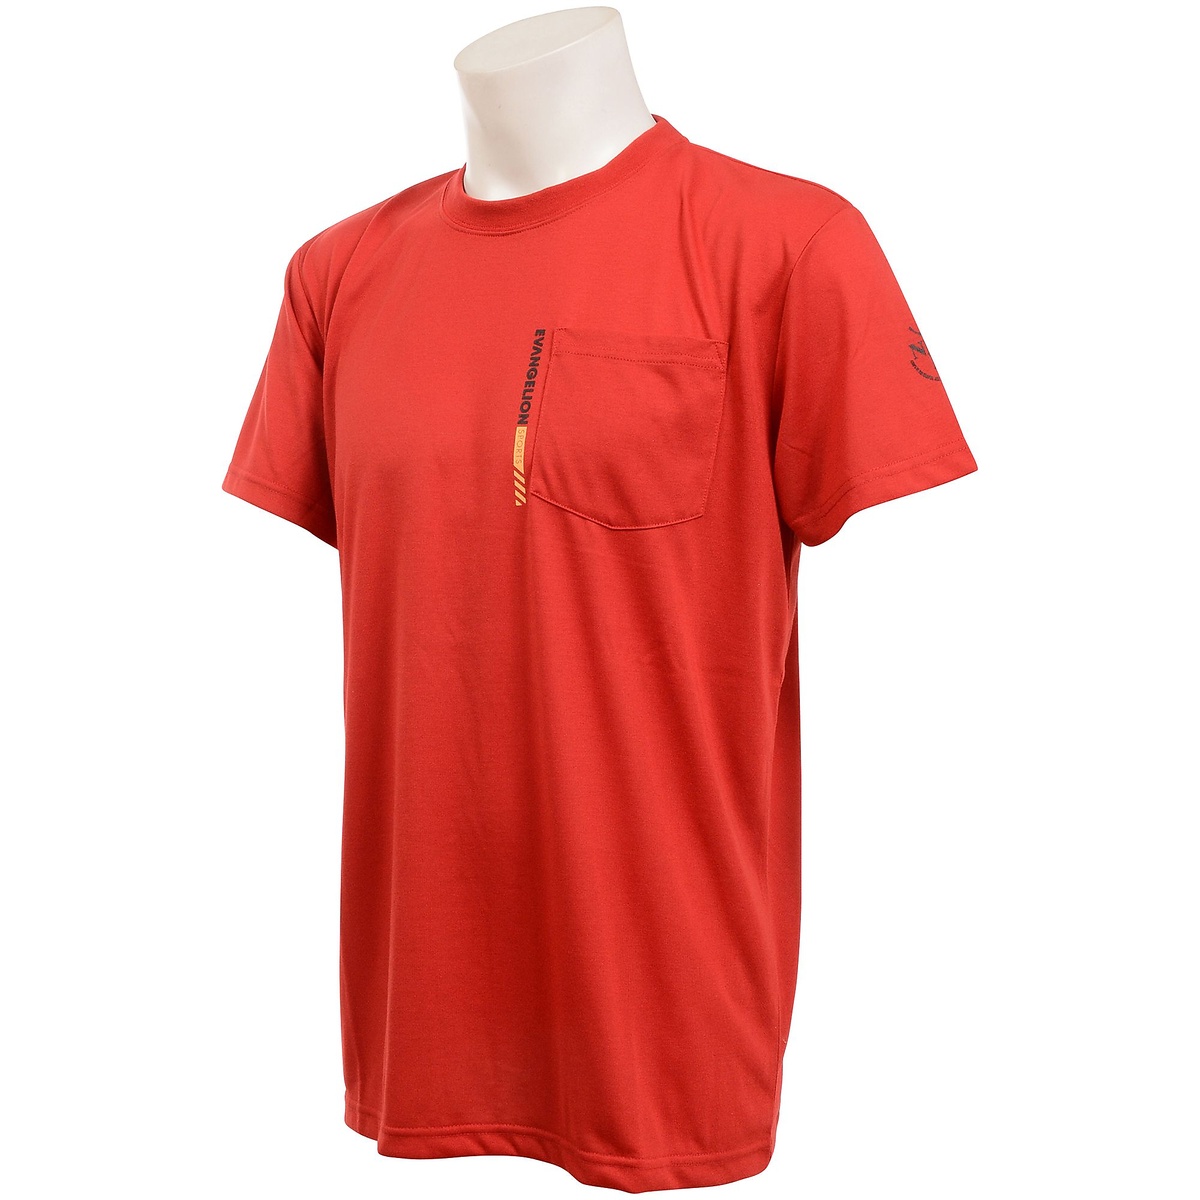 メンズスポーツウェア 保証 半袖ベーシックTシャツ EVANGELION 爆売りセール開催中 ポケットT EVA02102 メンズ RED